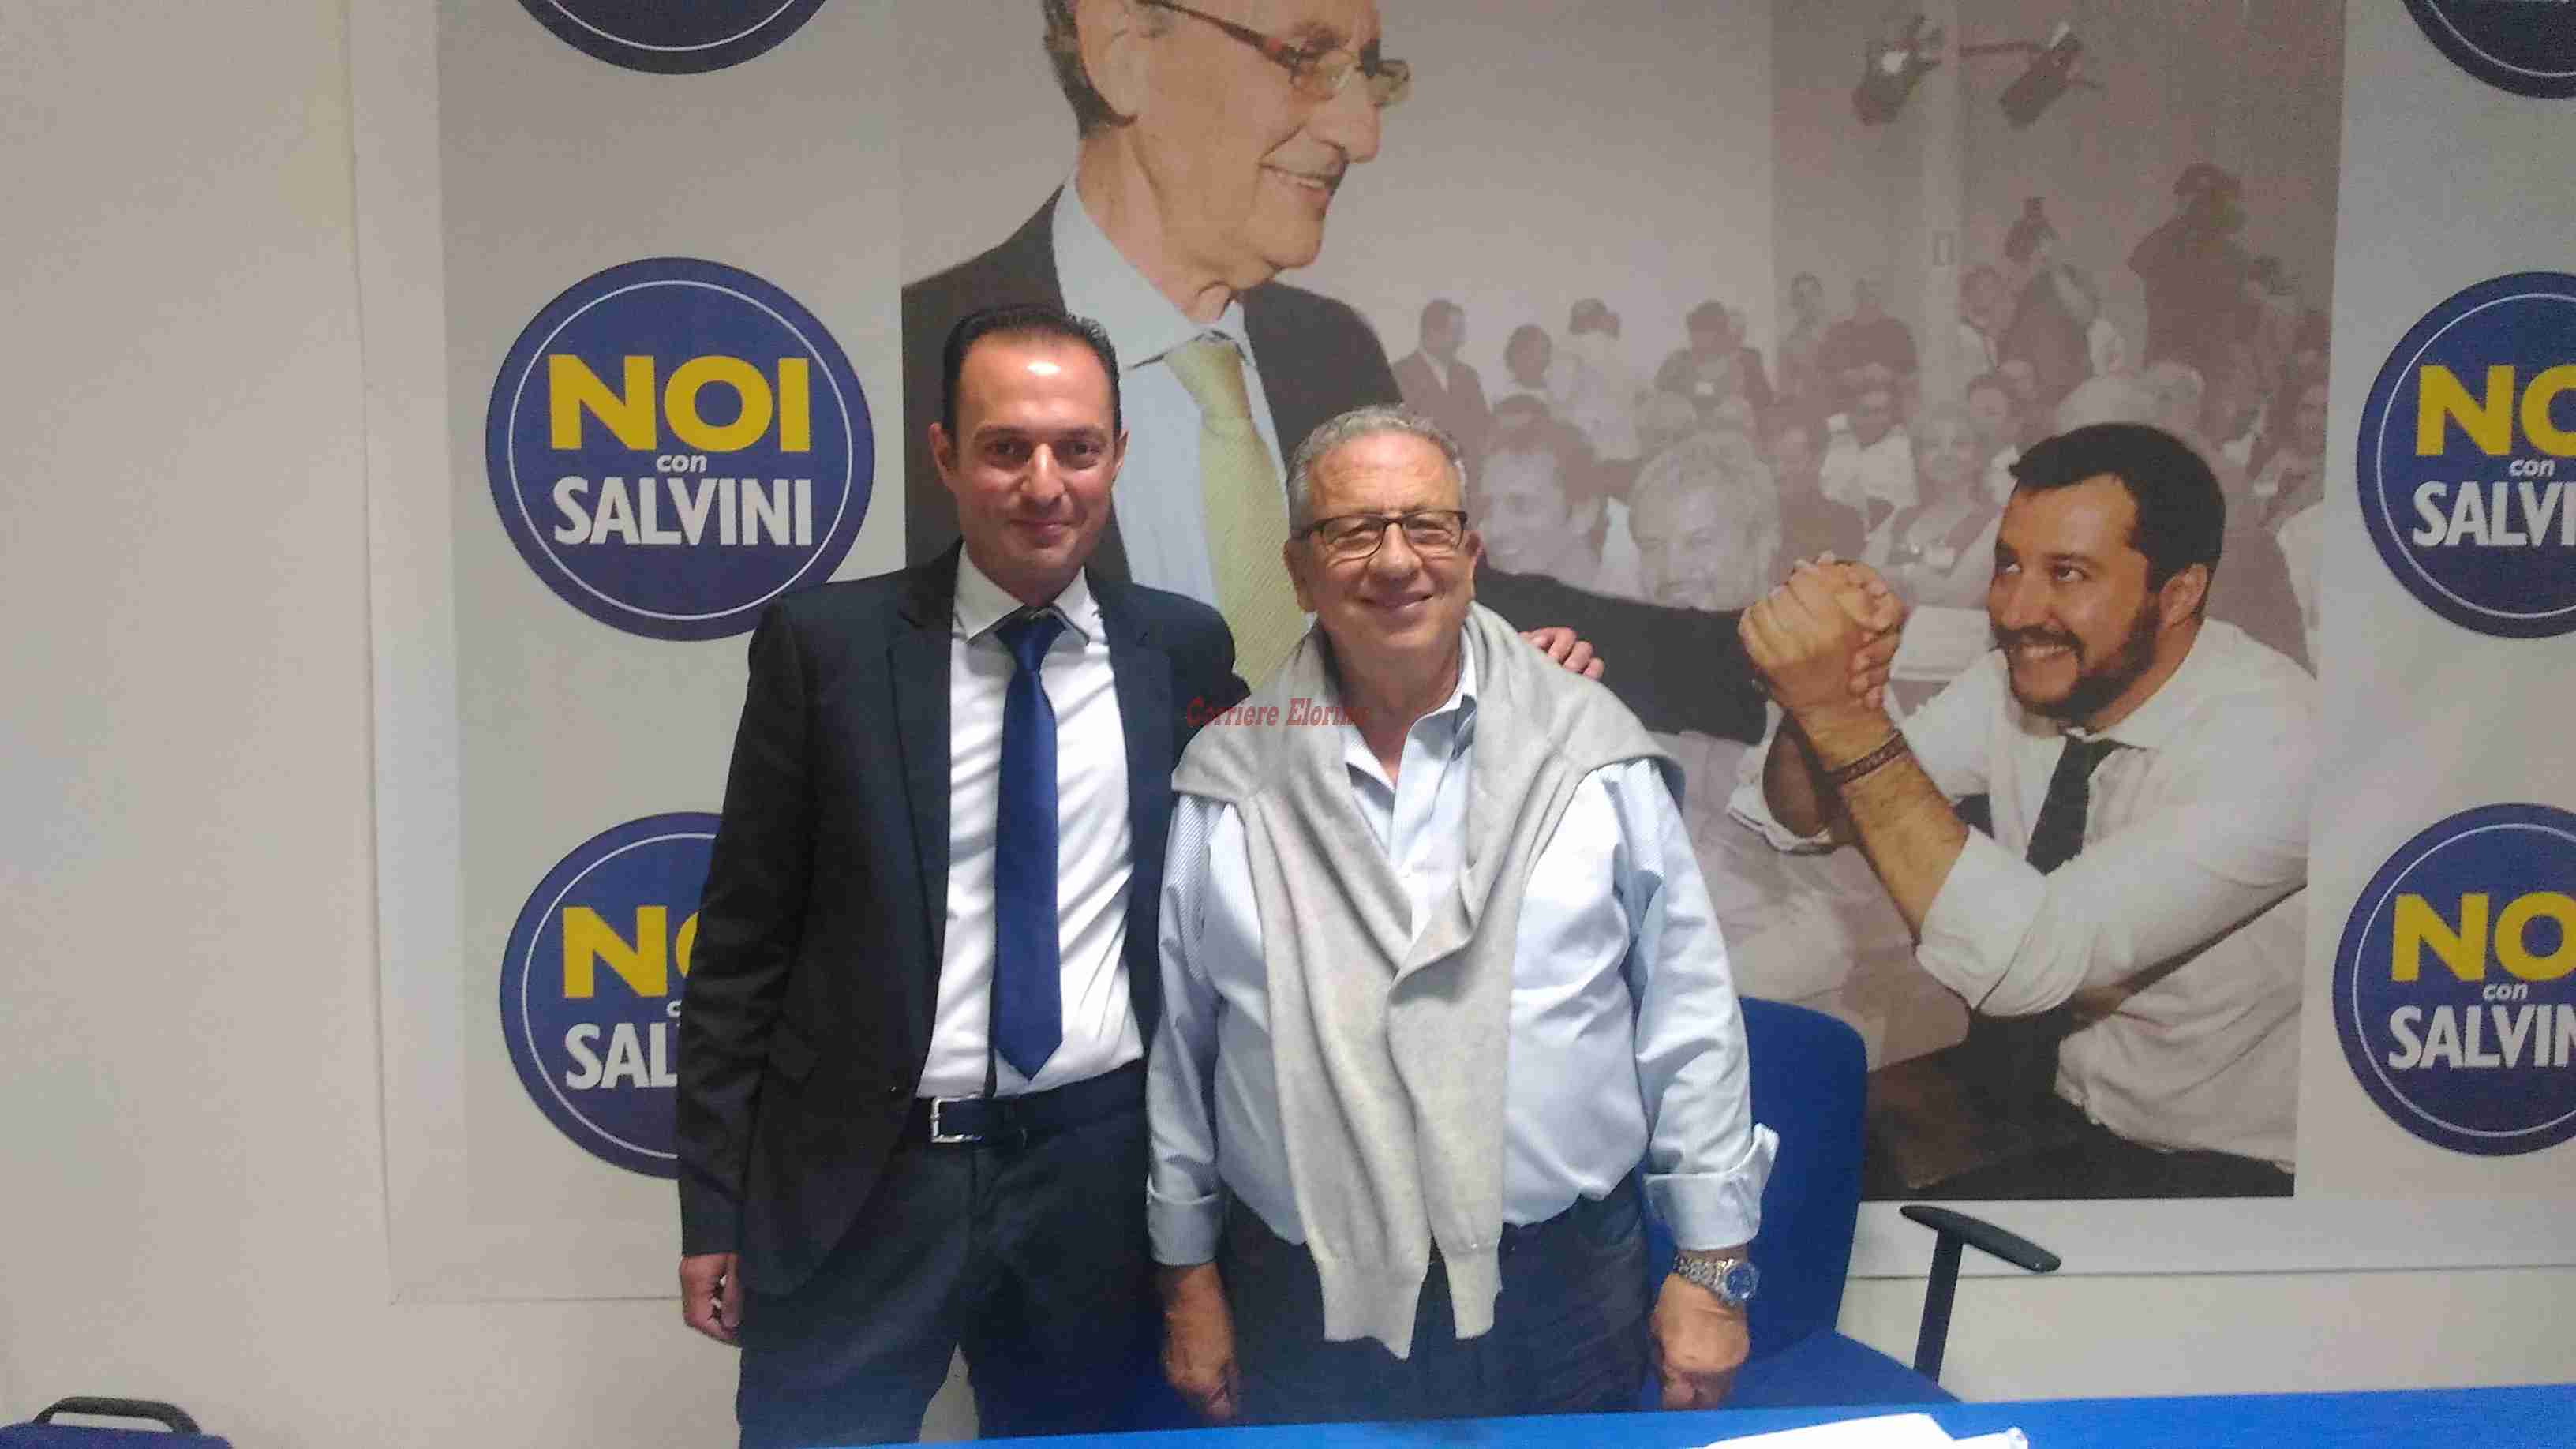 Pierpaolo Capozio lascia l’Mpl per fondare “Noi con Salvini” a Rosolini